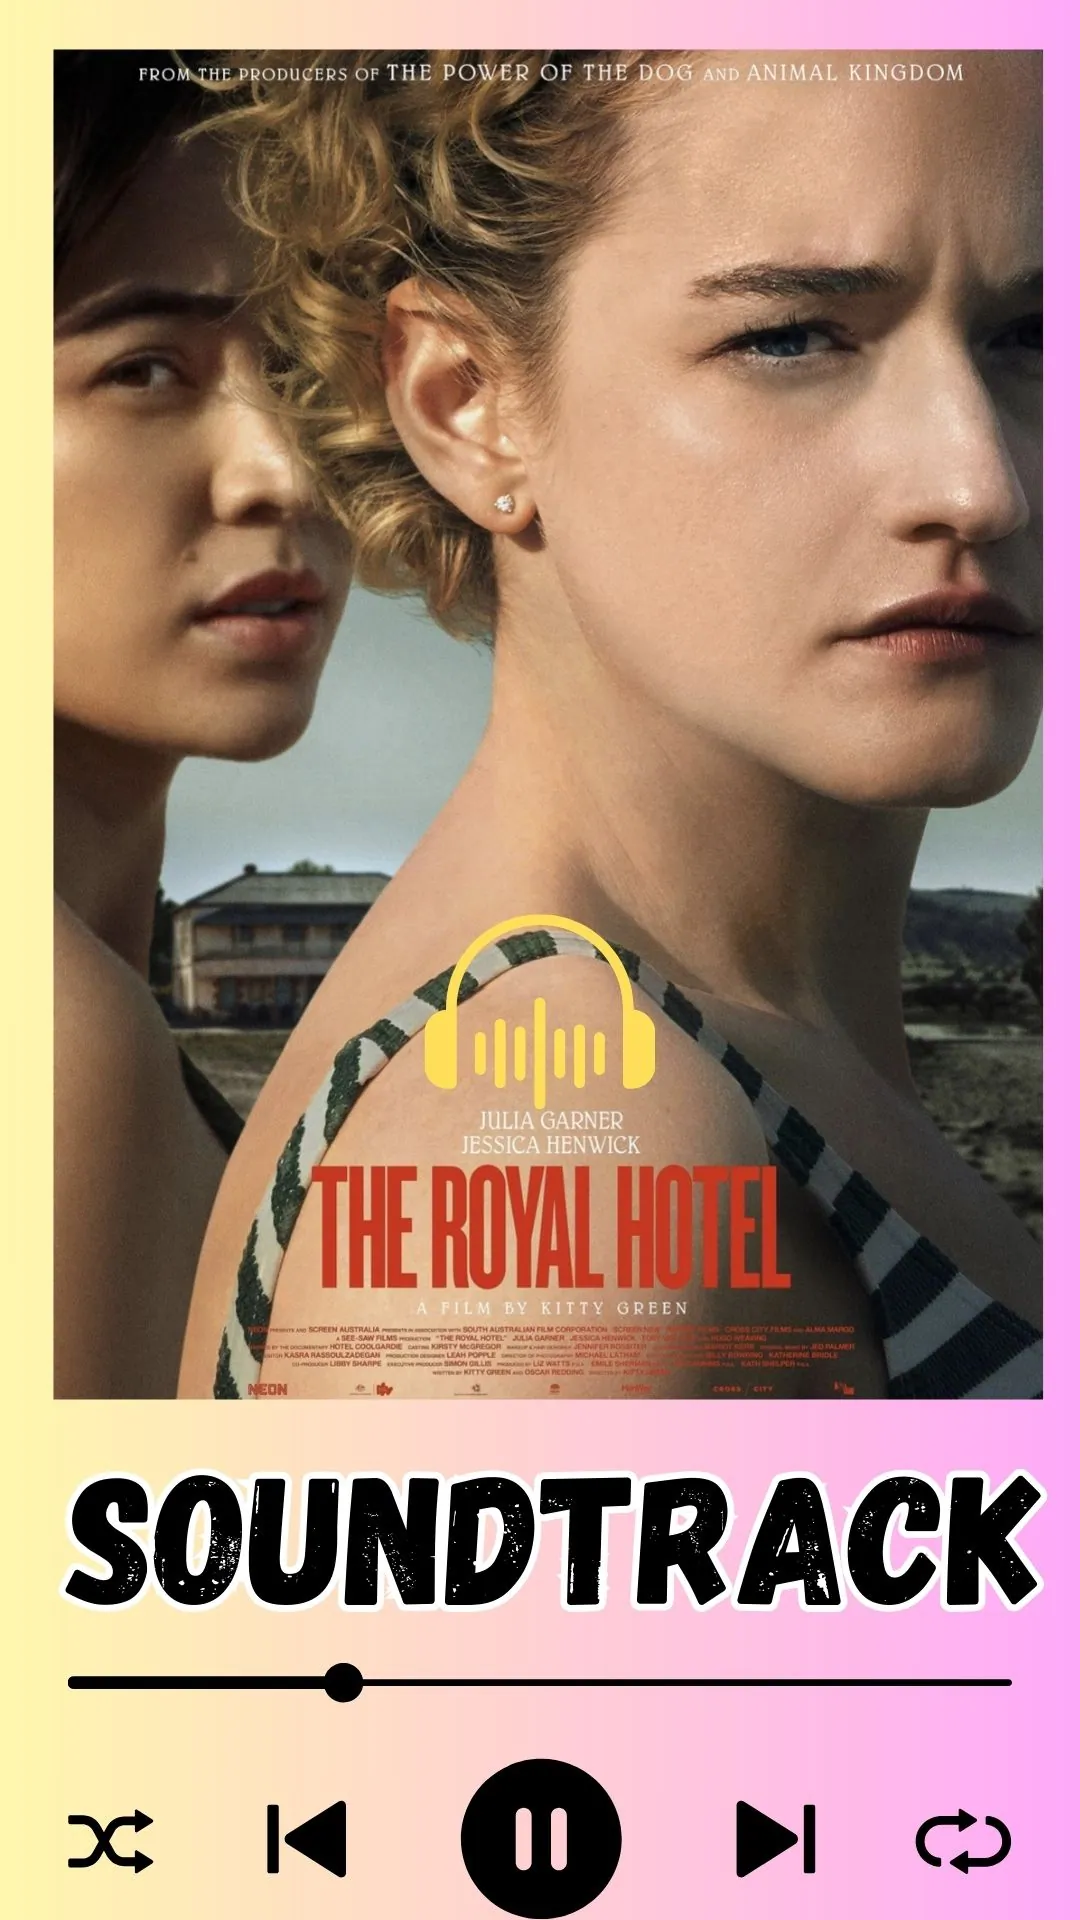 The Royal Hotel Soundtrack